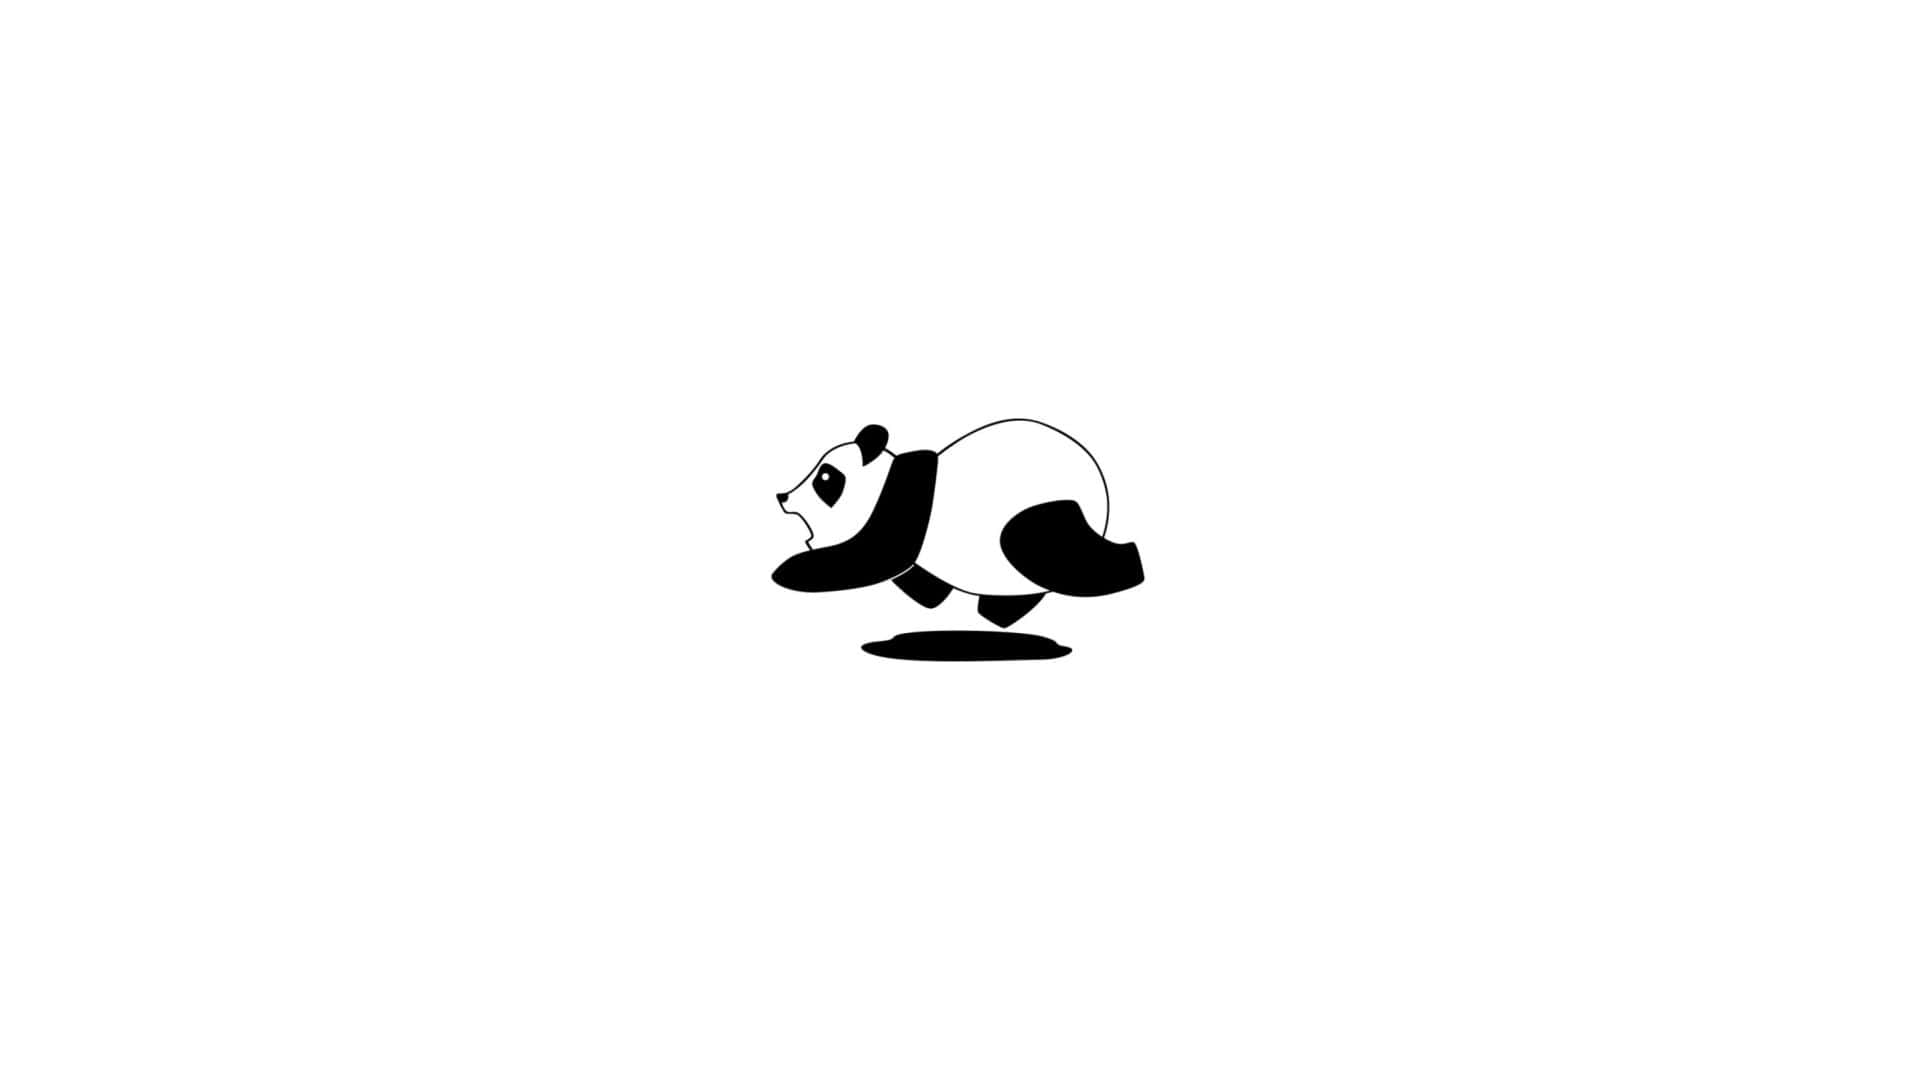 Einpandabären-logo Auf Einem Weißen Hintergrund Wallpaper